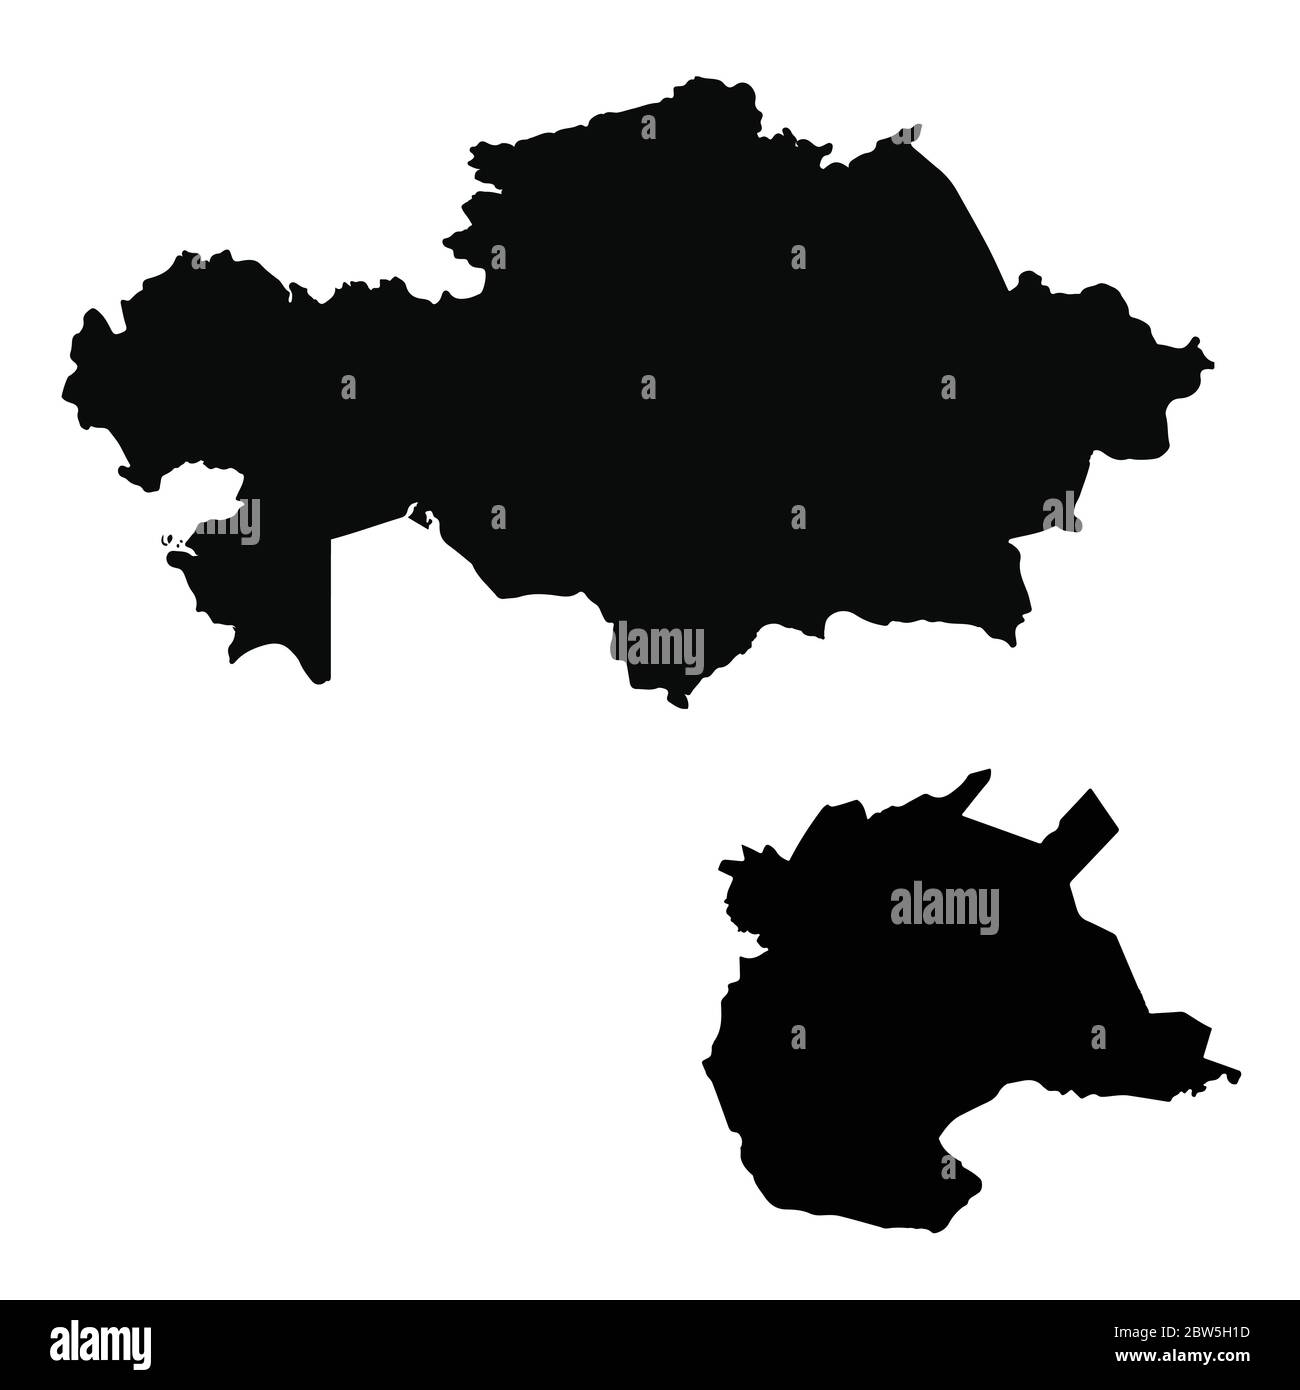 Mappa vettoriale Kazakistan e Nur Sultan. Paese e capitale. Illustrazione vettoriale isolata. Nero su sfondo bianco. Illustrazione EPS 10. Illustrazione Vettoriale